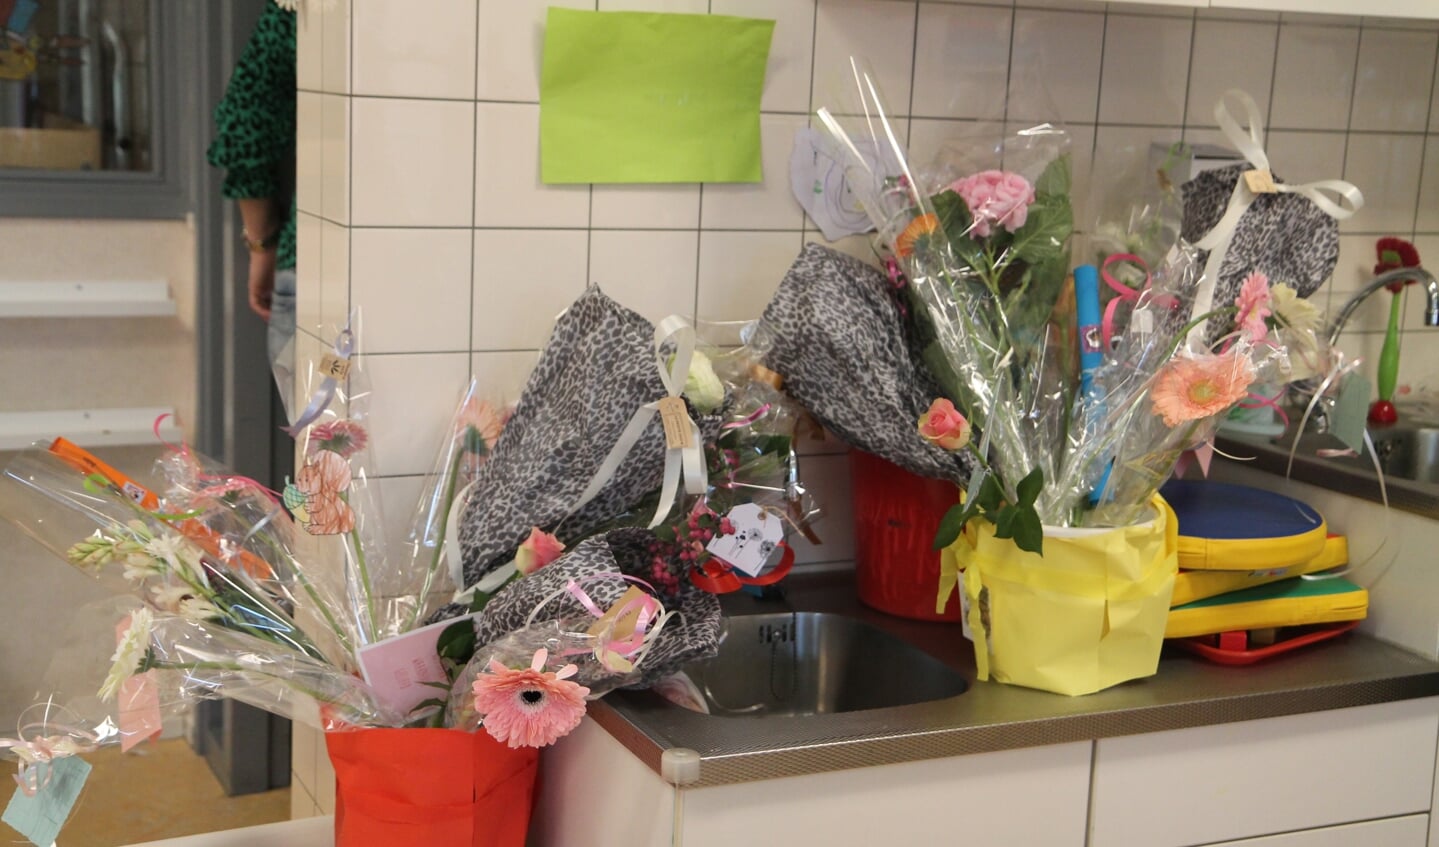 Elke peuter mocht een bloem aan de juffen geven zodat prachtige boeketten ontstonden